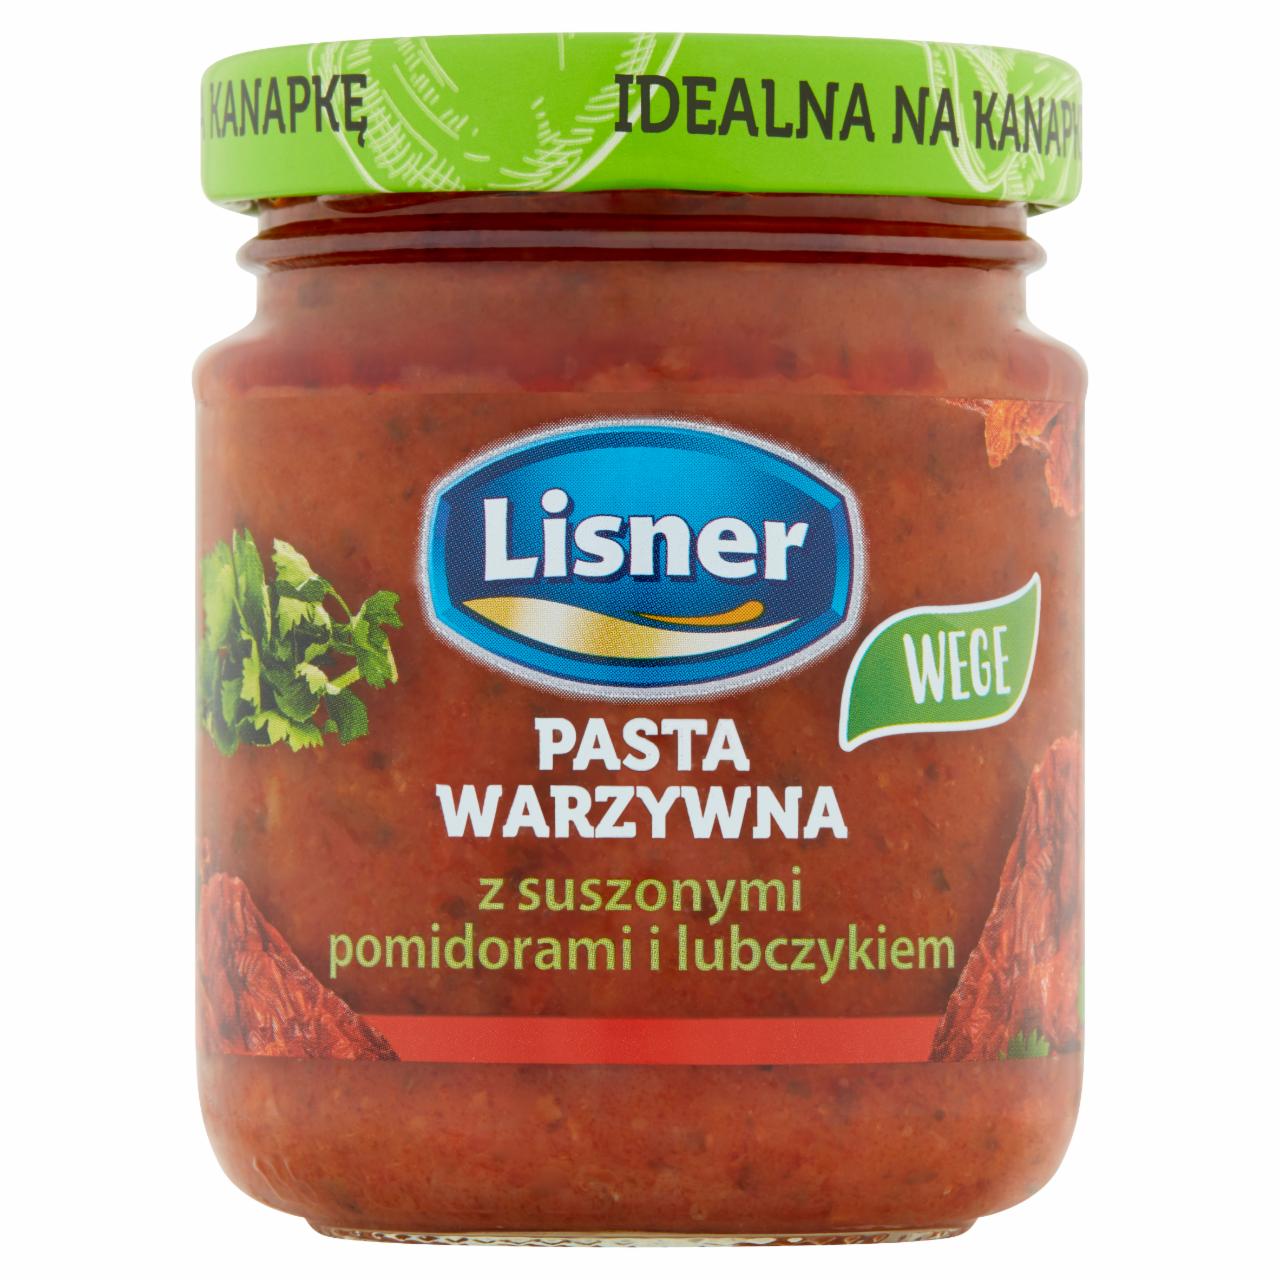 Zdjęcia - Lisner Pasta warzywna z suszonymi pomidorami i lubczykiem 110 g